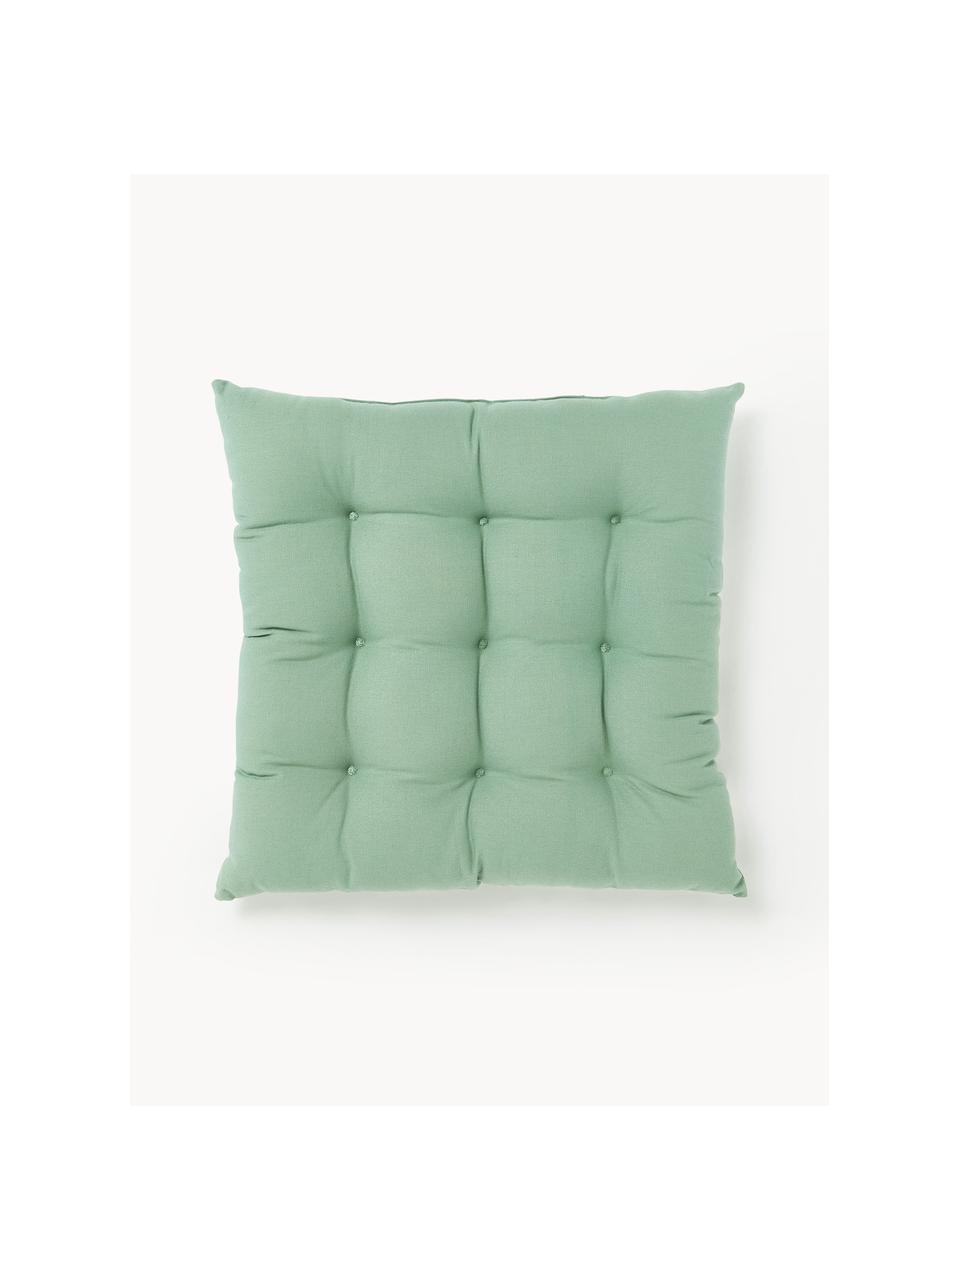 Poduszka na krzesło Ava, 2 szt., Szałwiowy zielony, S 40 x D 40 cm